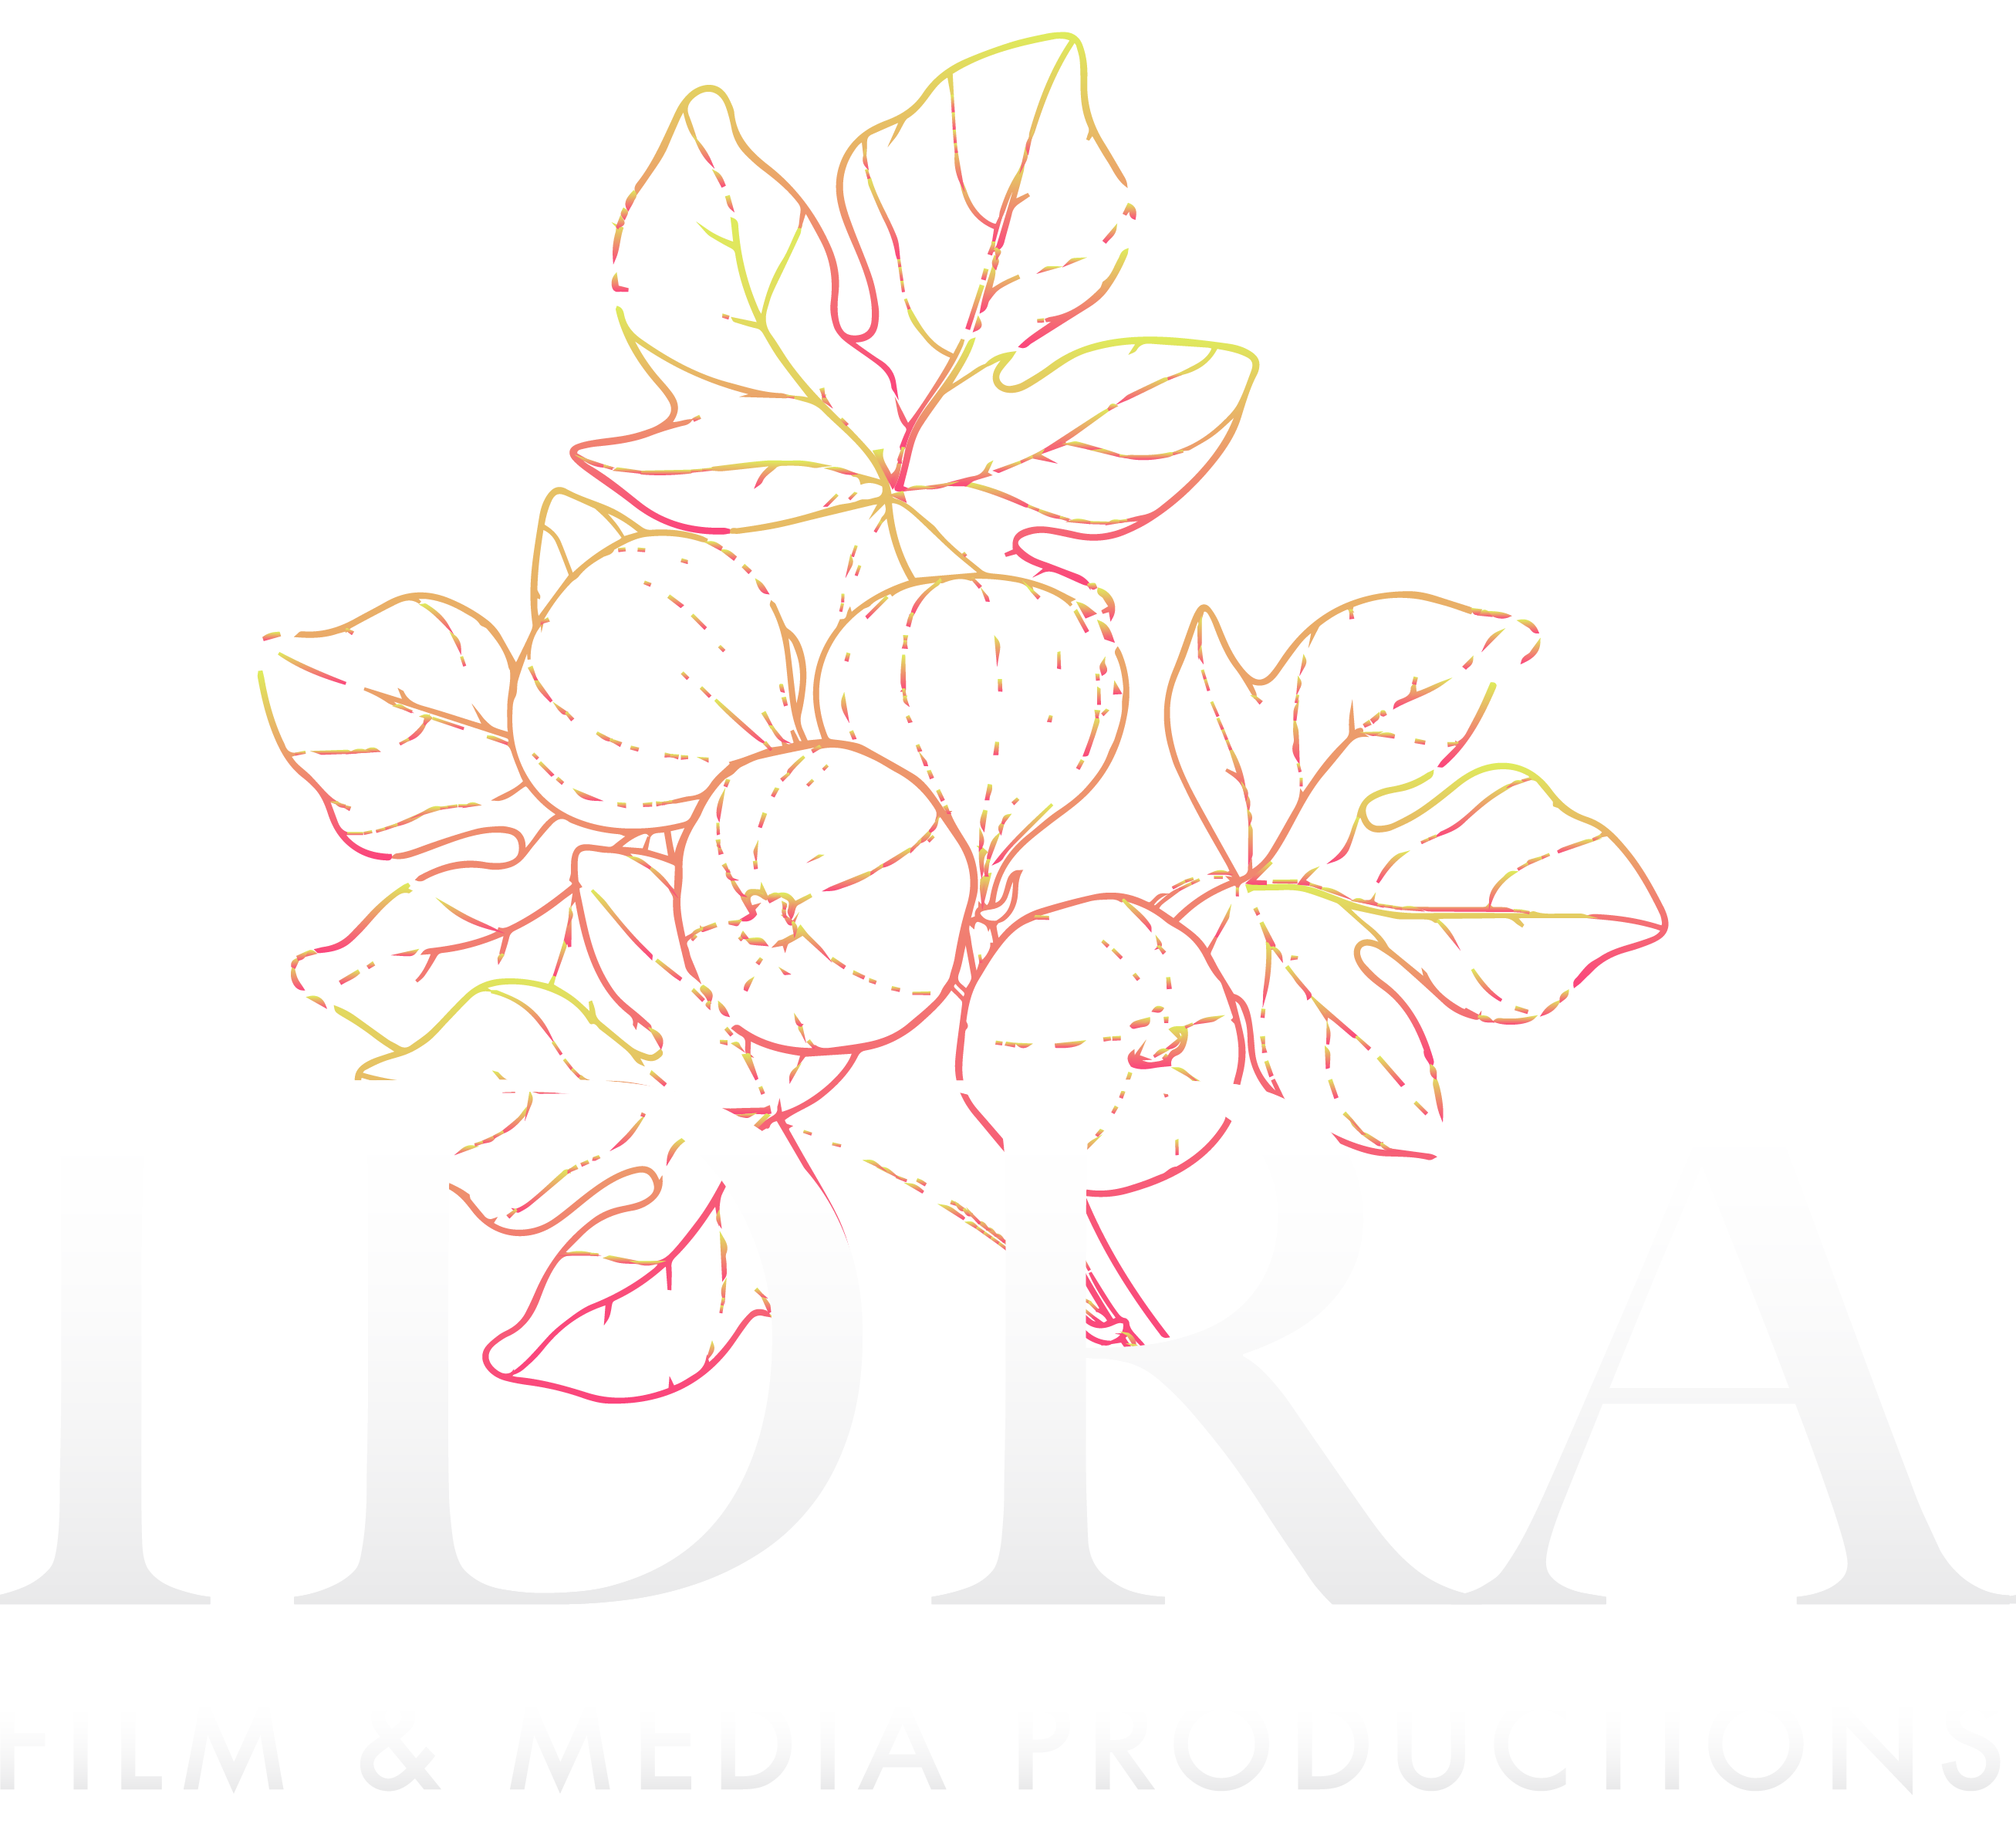 IDRA Productions